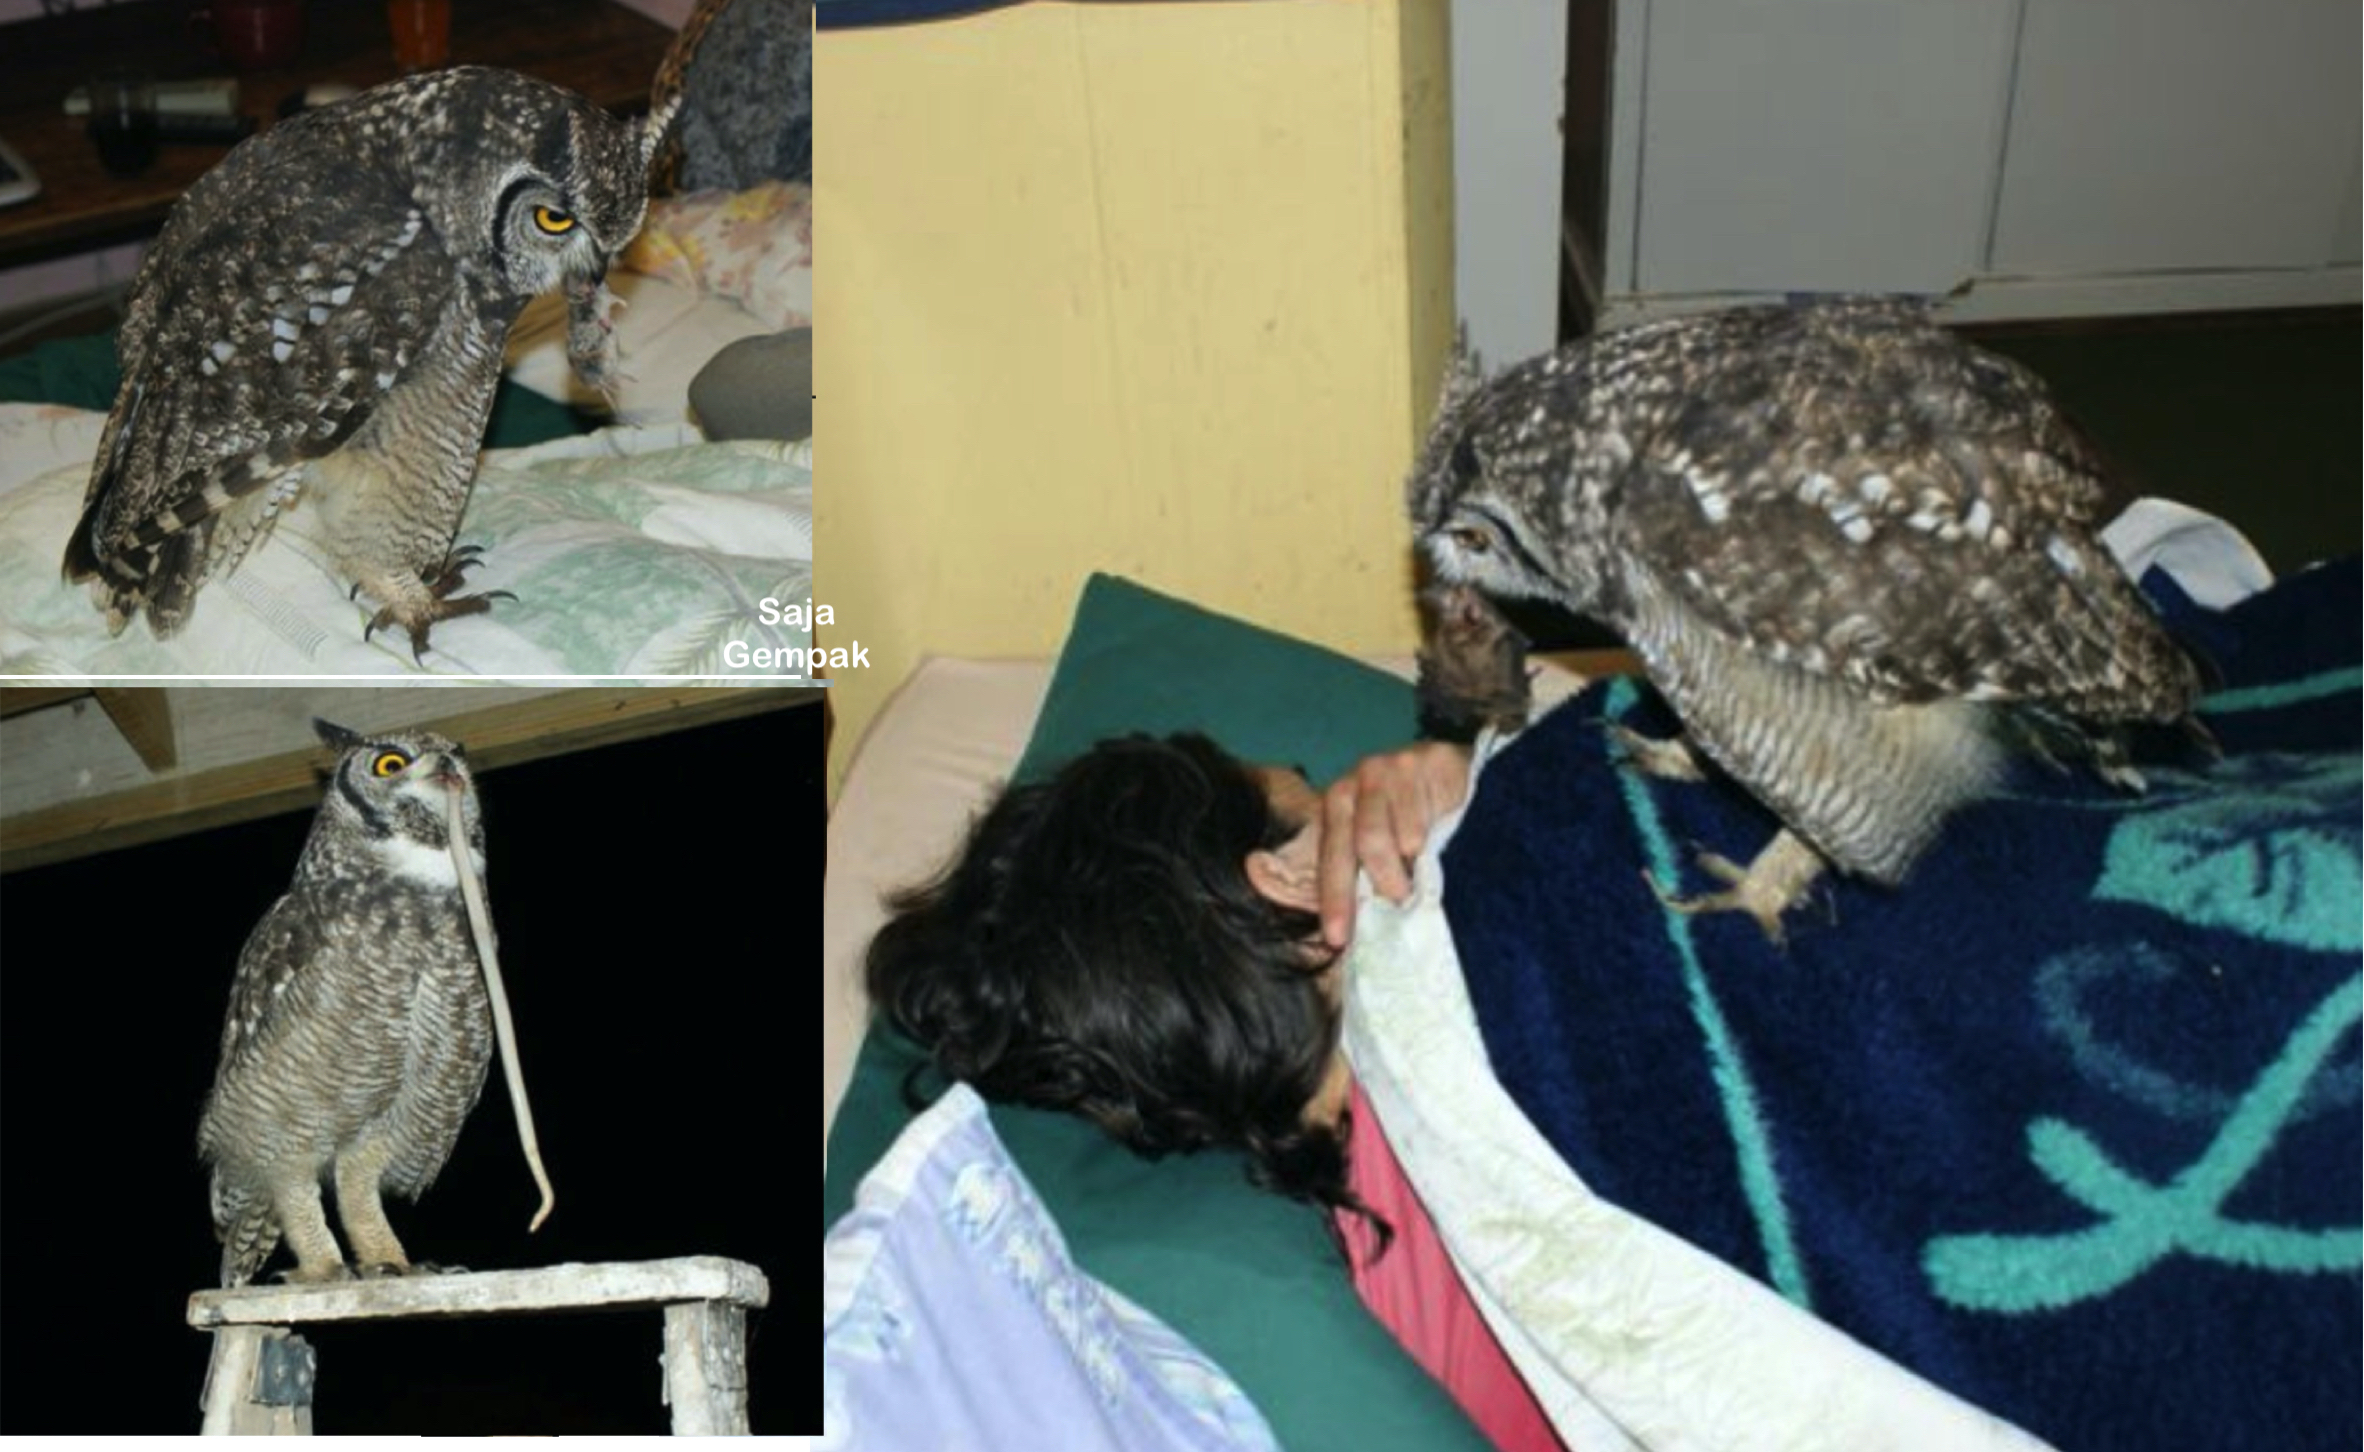 Terhutang Budi Selepas Diselamatkan, Burung Hantu Bawa ‘Hadiah’ Setiap Hari Untuk Penyelamatnya - sajagempak.com